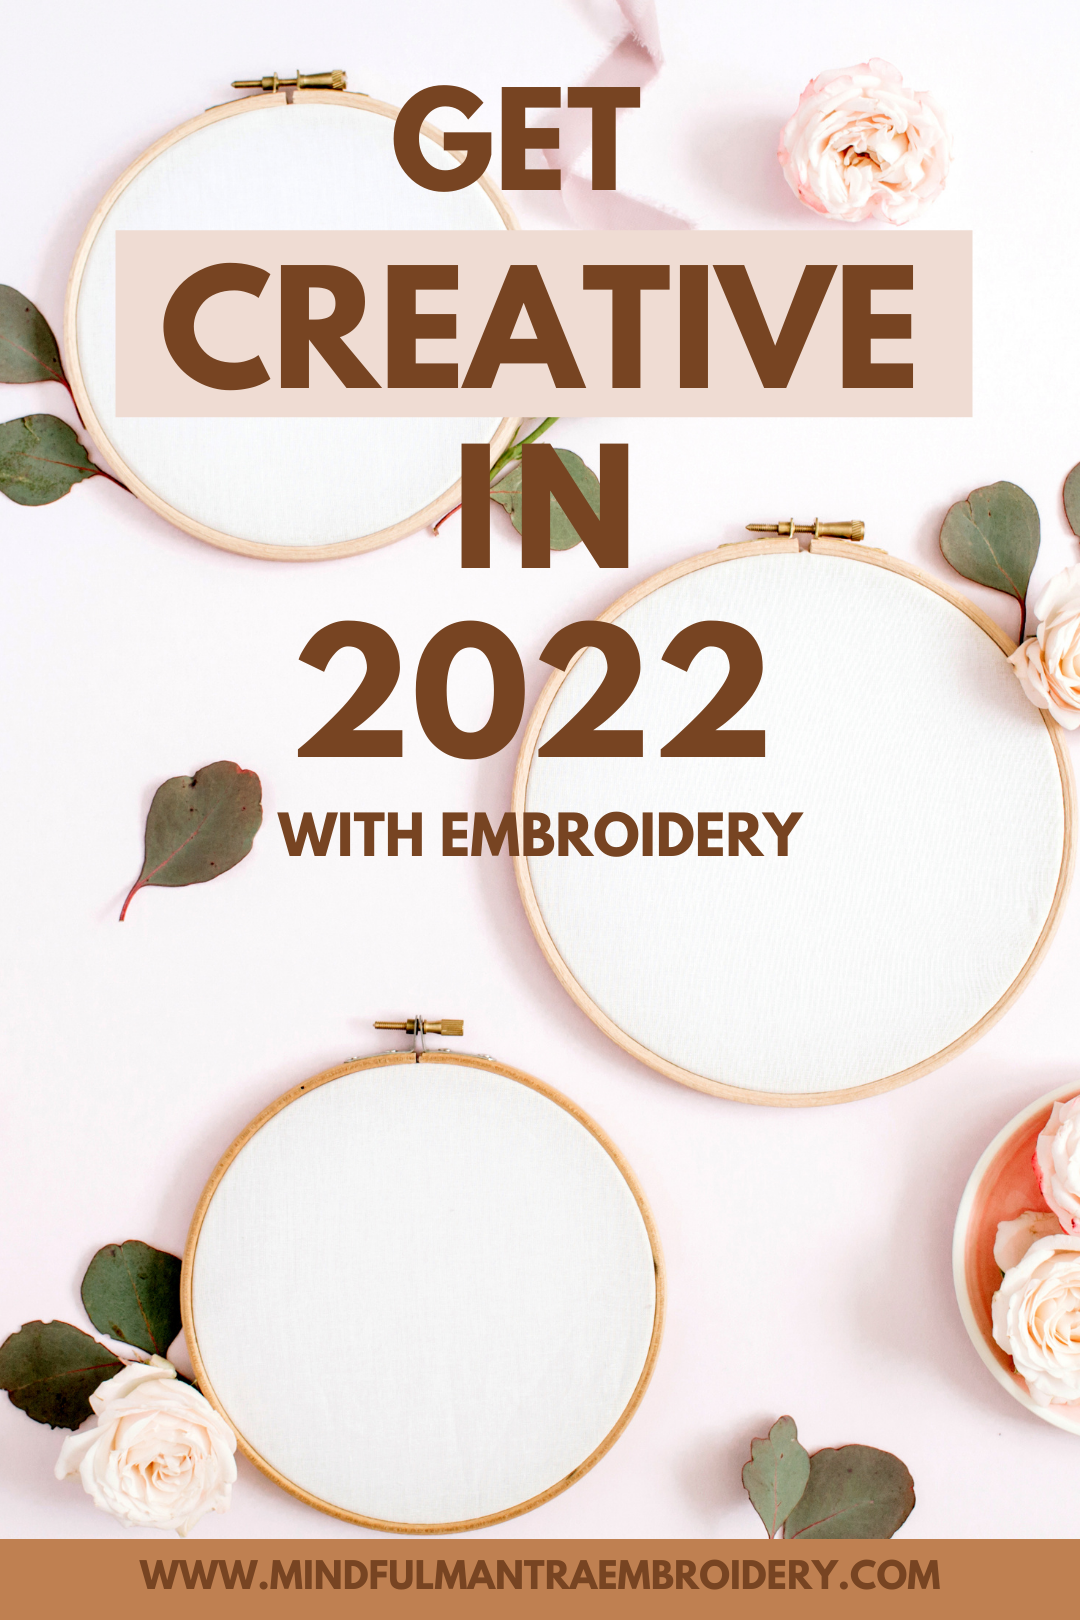 Get Creative Again in Year 2022